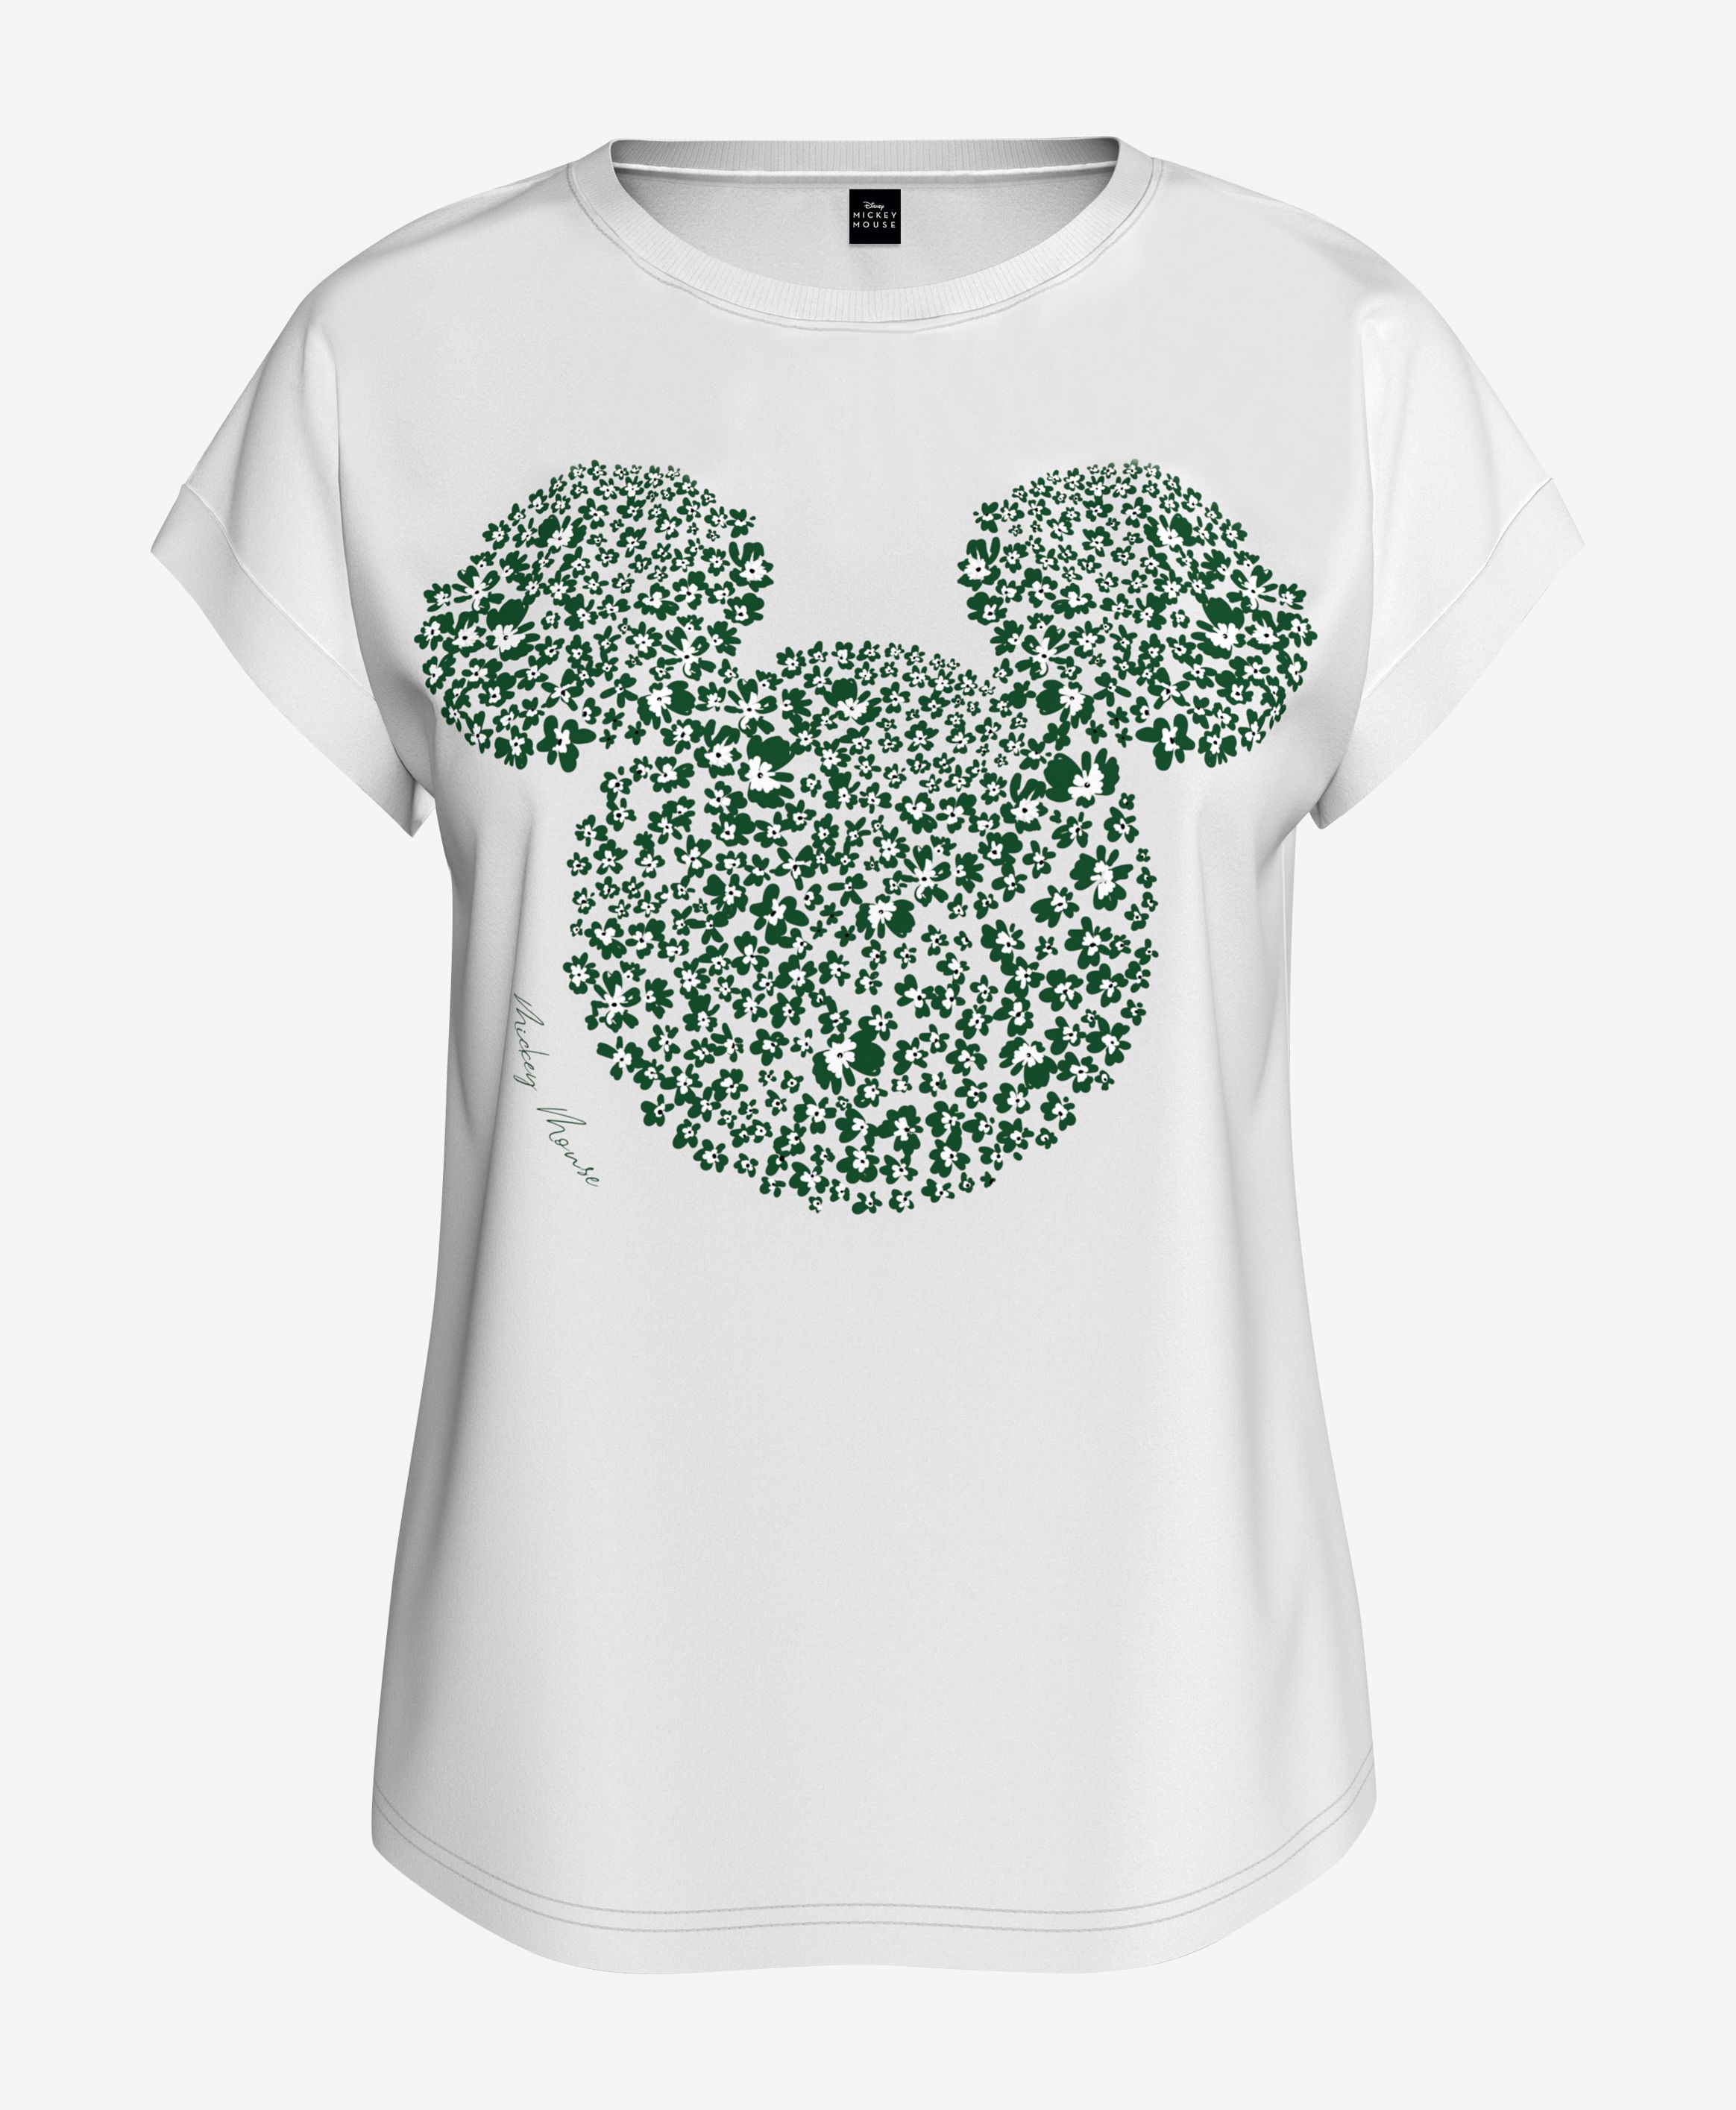 T-Shirt, 100% Baumwolle, für Damen, weiß, grün, S-XXXL